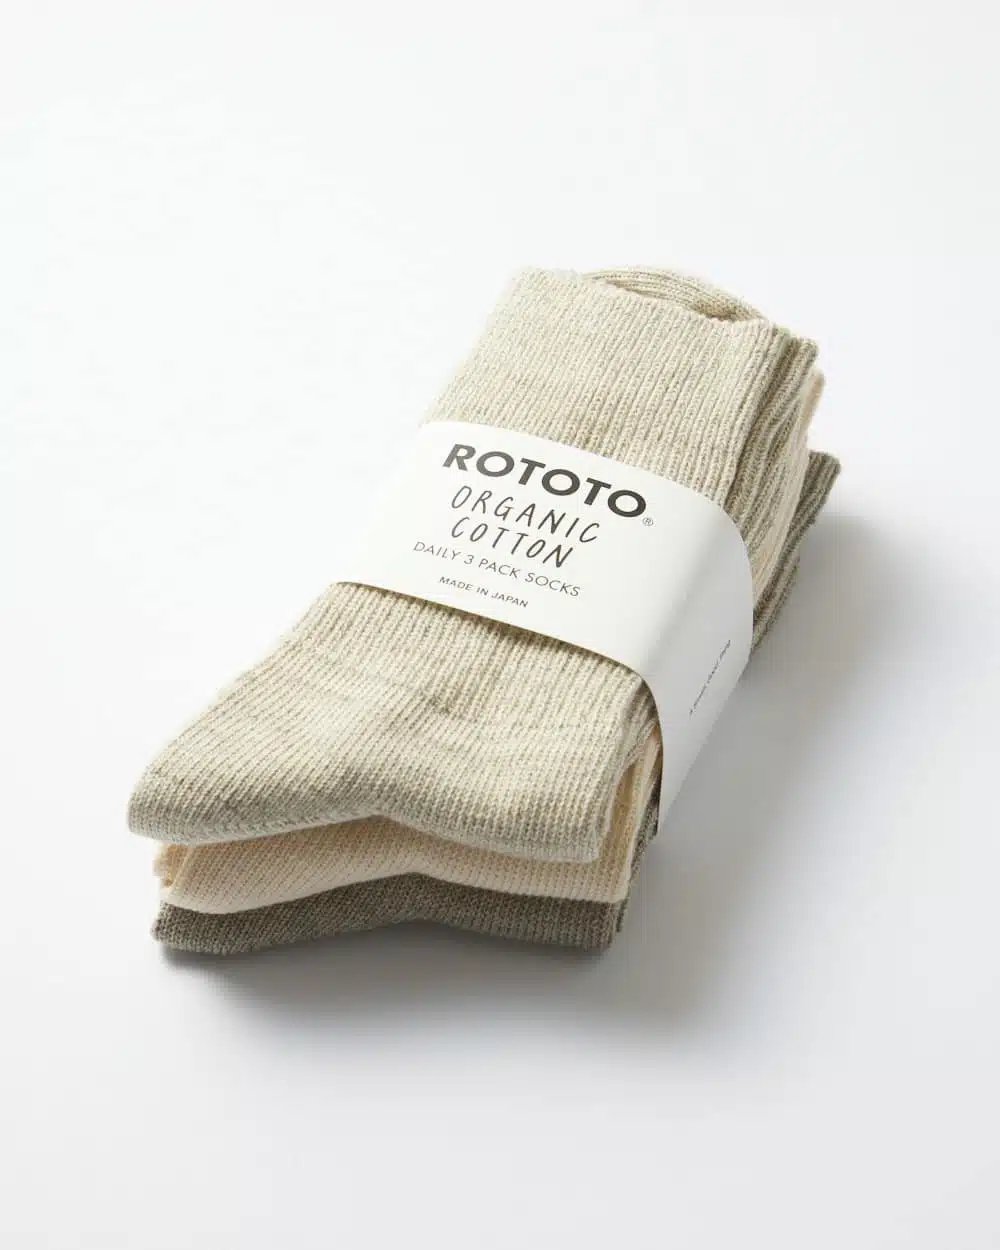 rototo-organic-daily-3-pack-ribbed-socks-ecru-grey-01.jpg